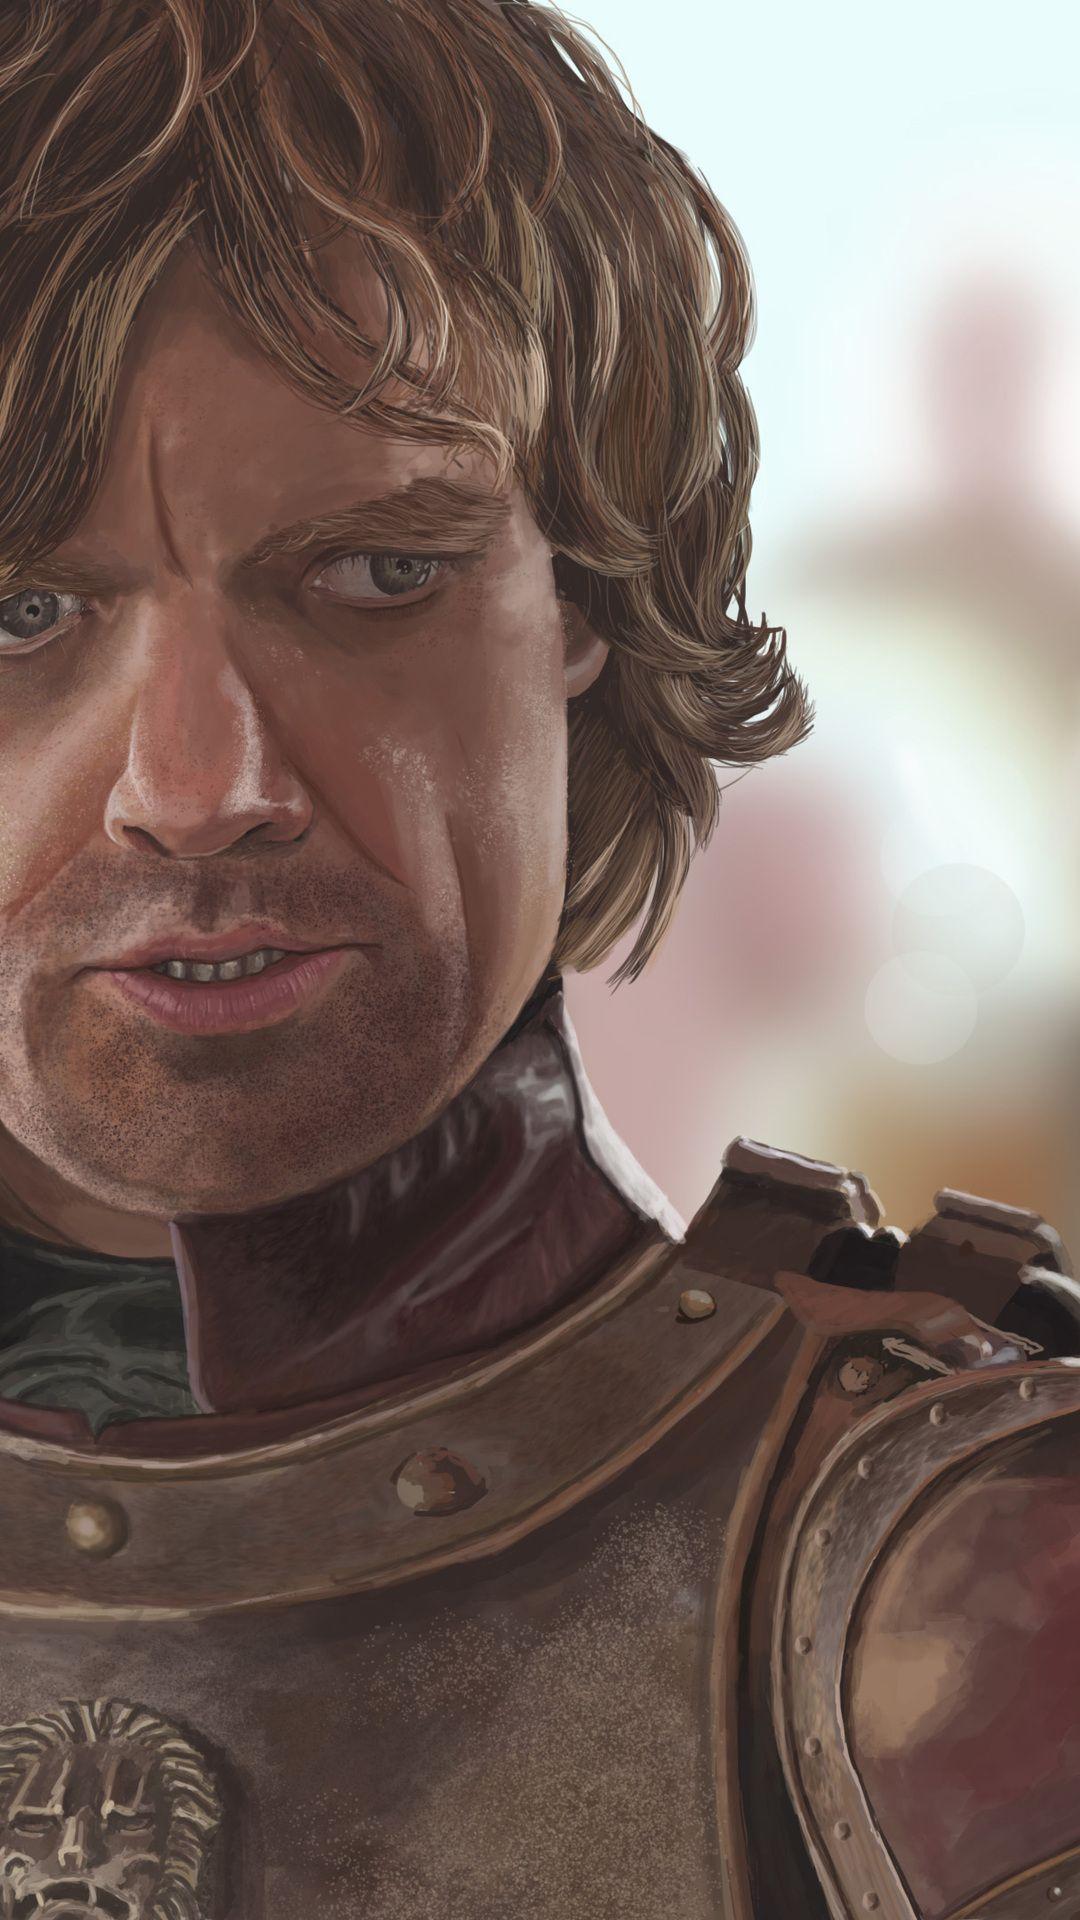 tyrion lannister, art, peter dinklage invites, portrait